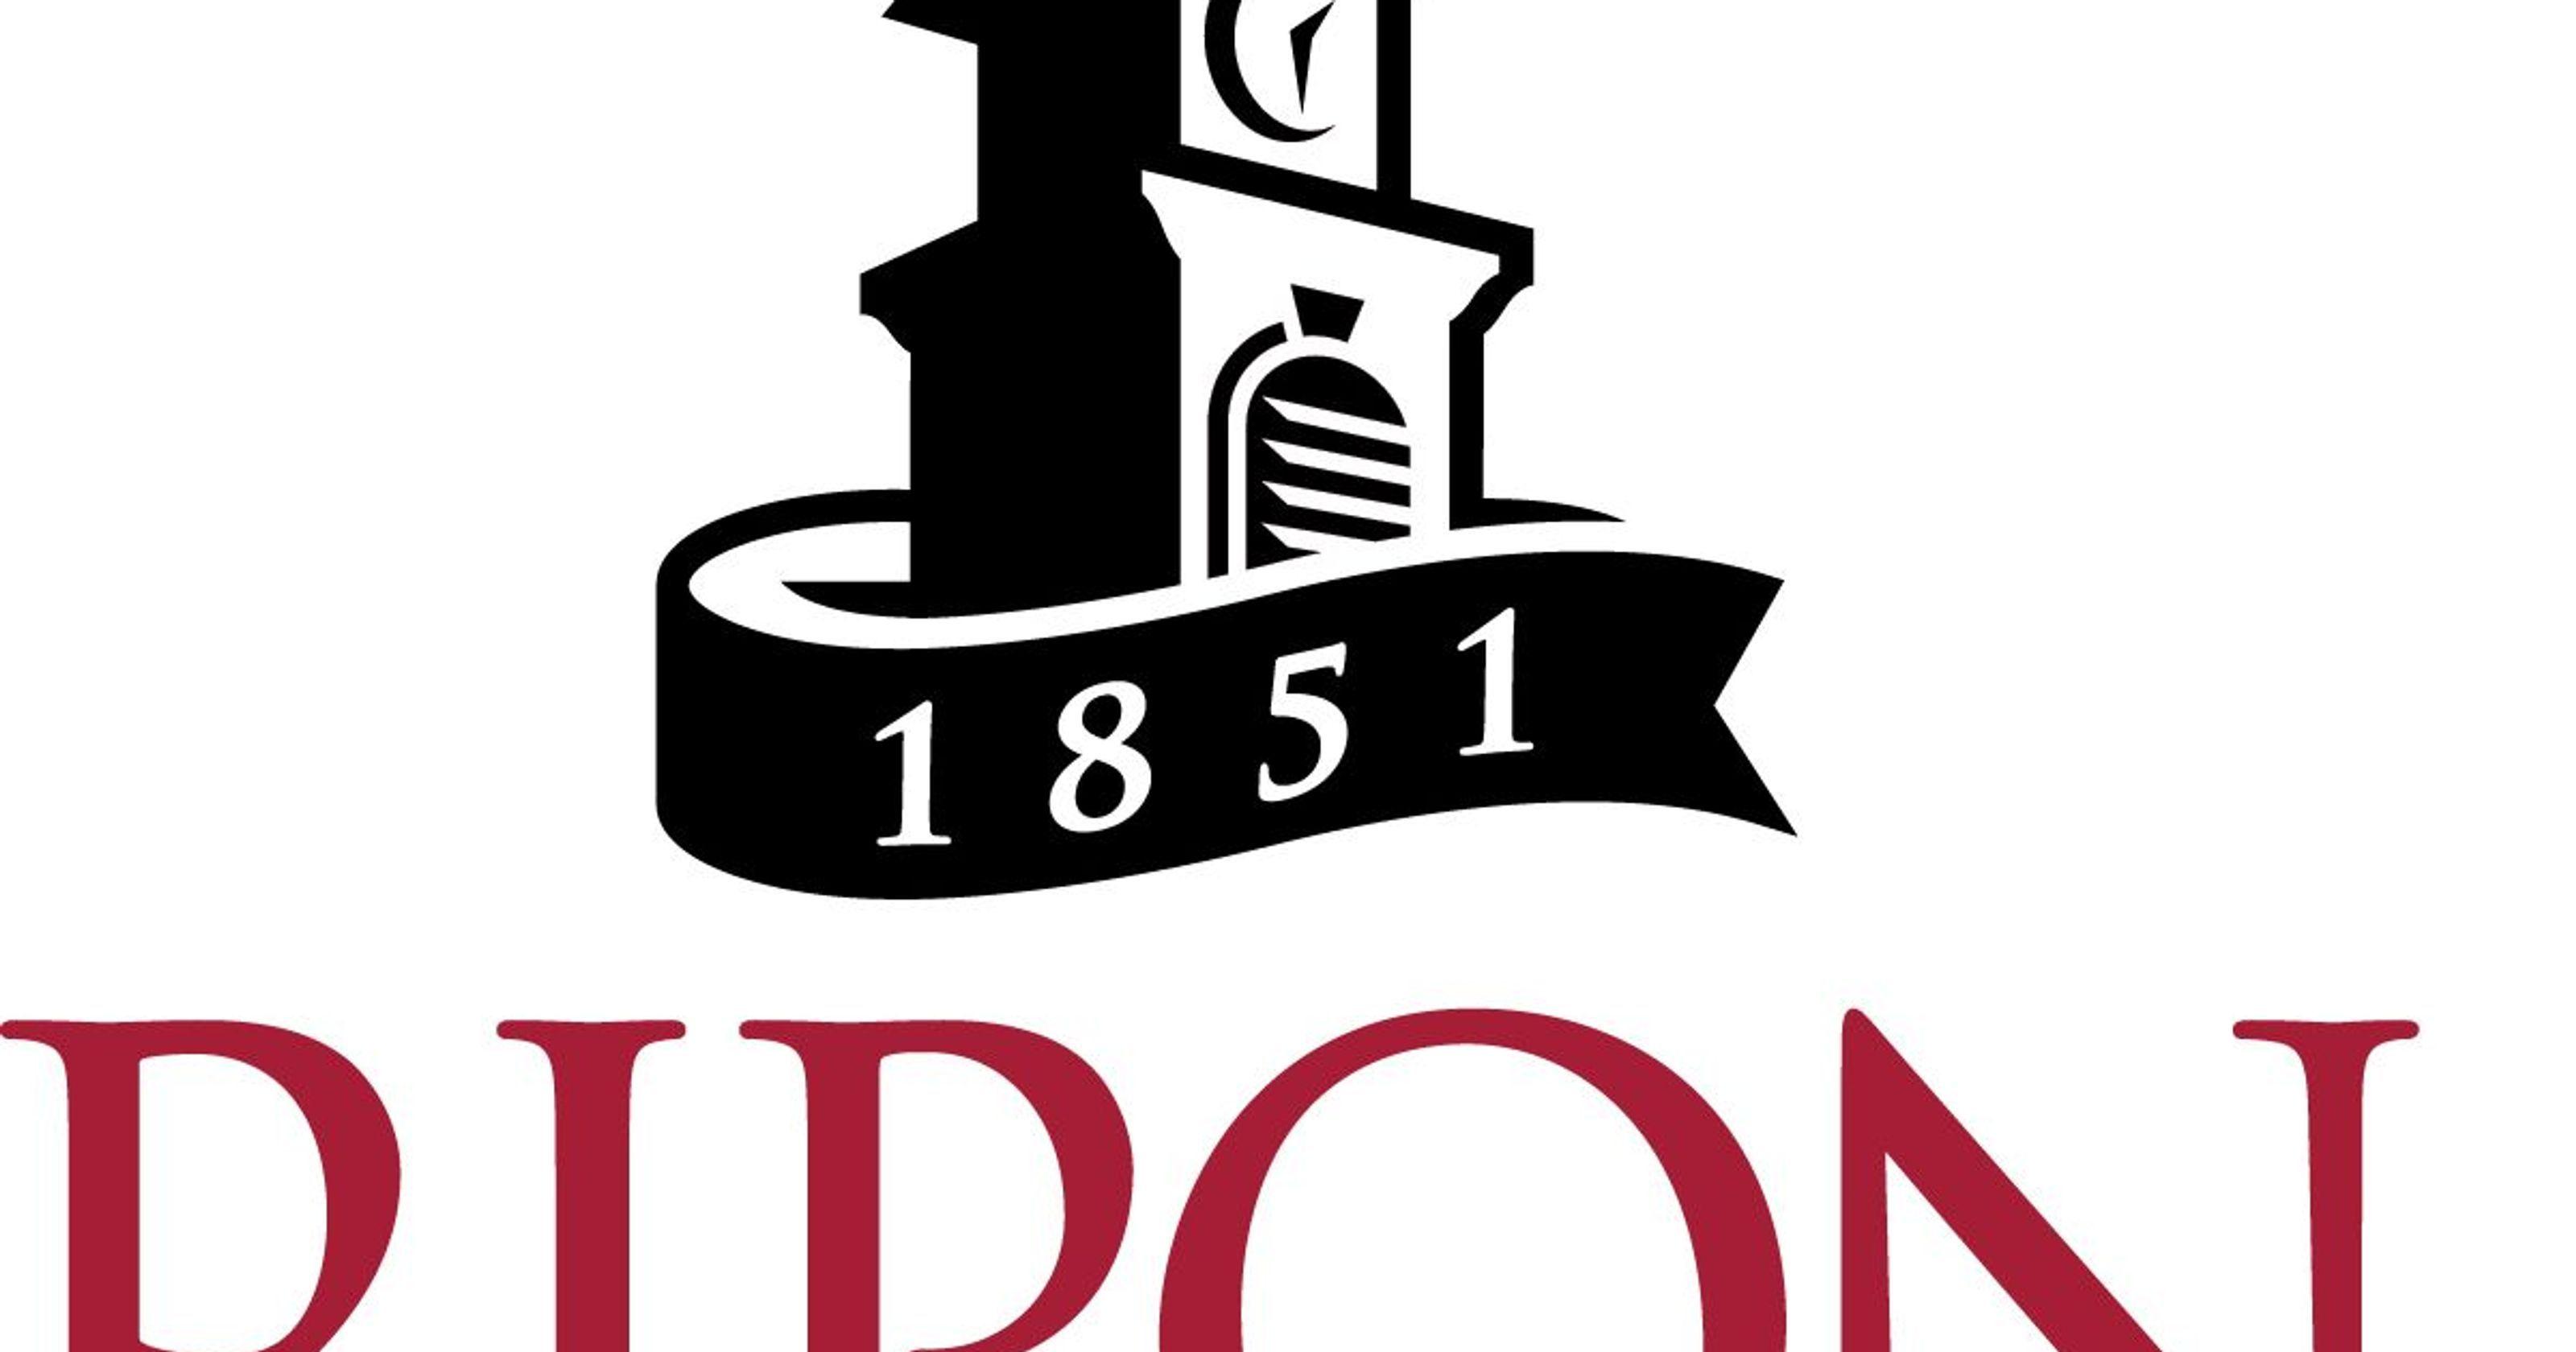 Ripon Logo - Ripon College receives $1 million gift to endow professorship